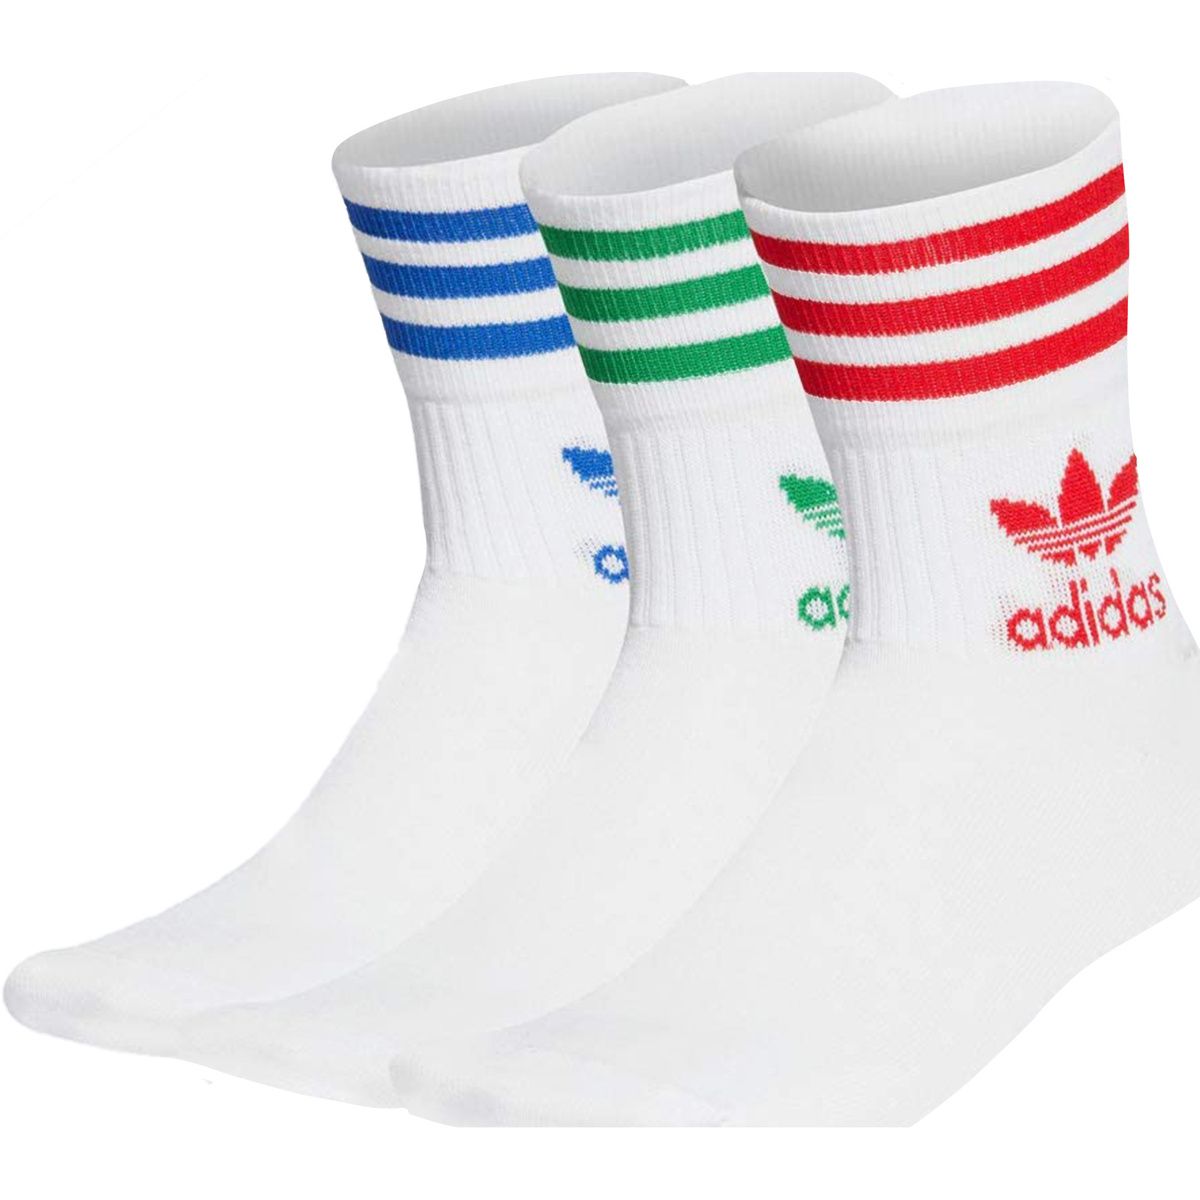 Calze sportive adidas GG1015 - Adidas - Modalova